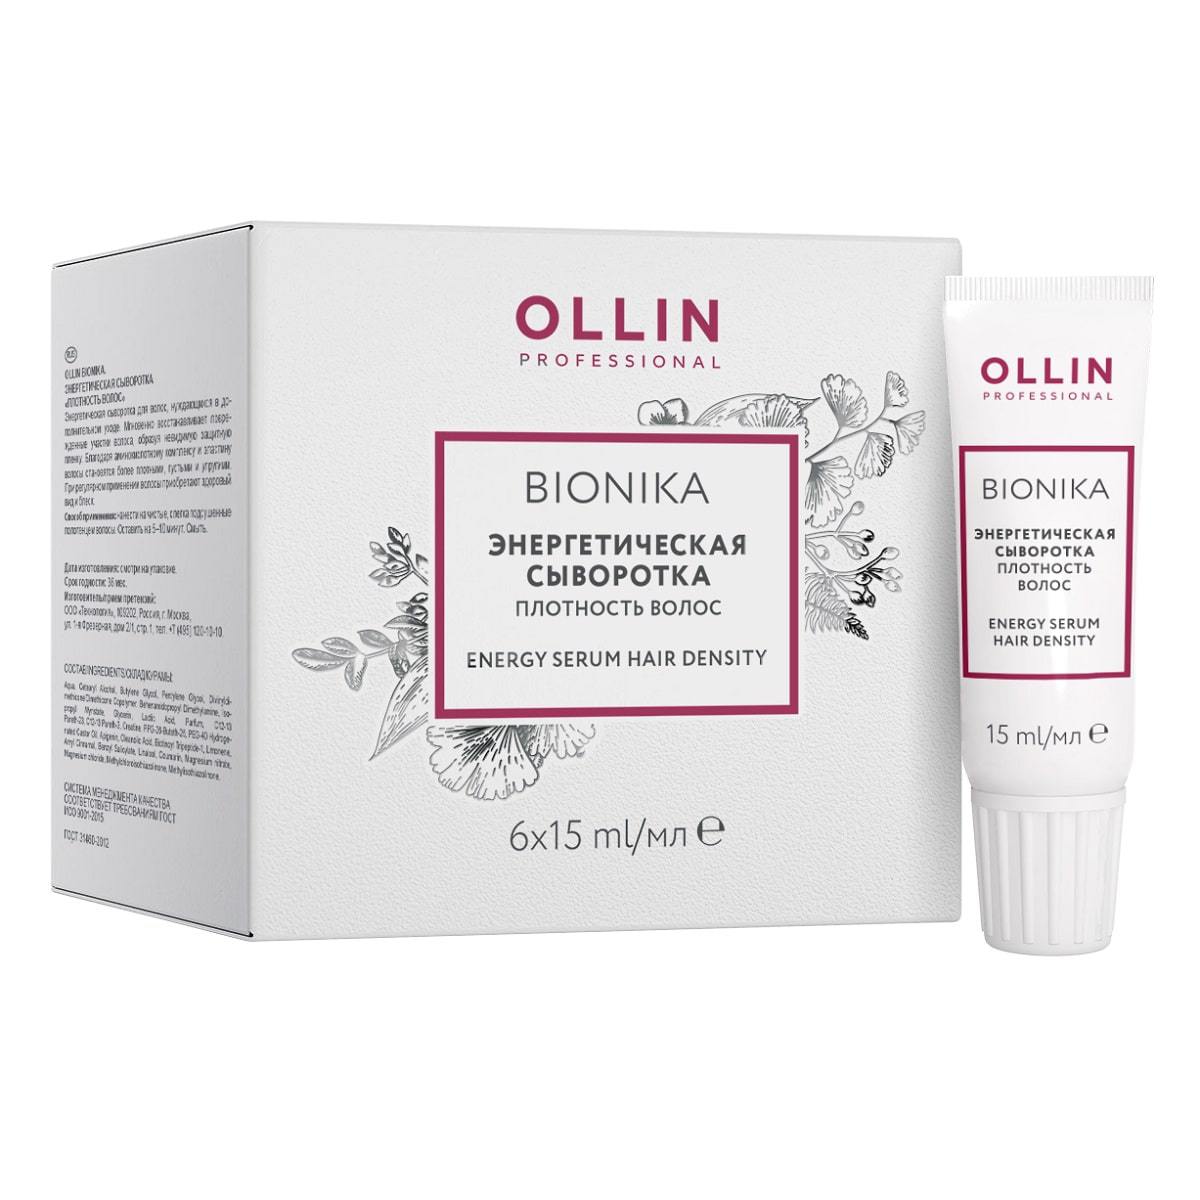 Ollin Professional Энергетическая сыворотка Плотность волос, 6х15 мл (Ollin Professional, BioNika)